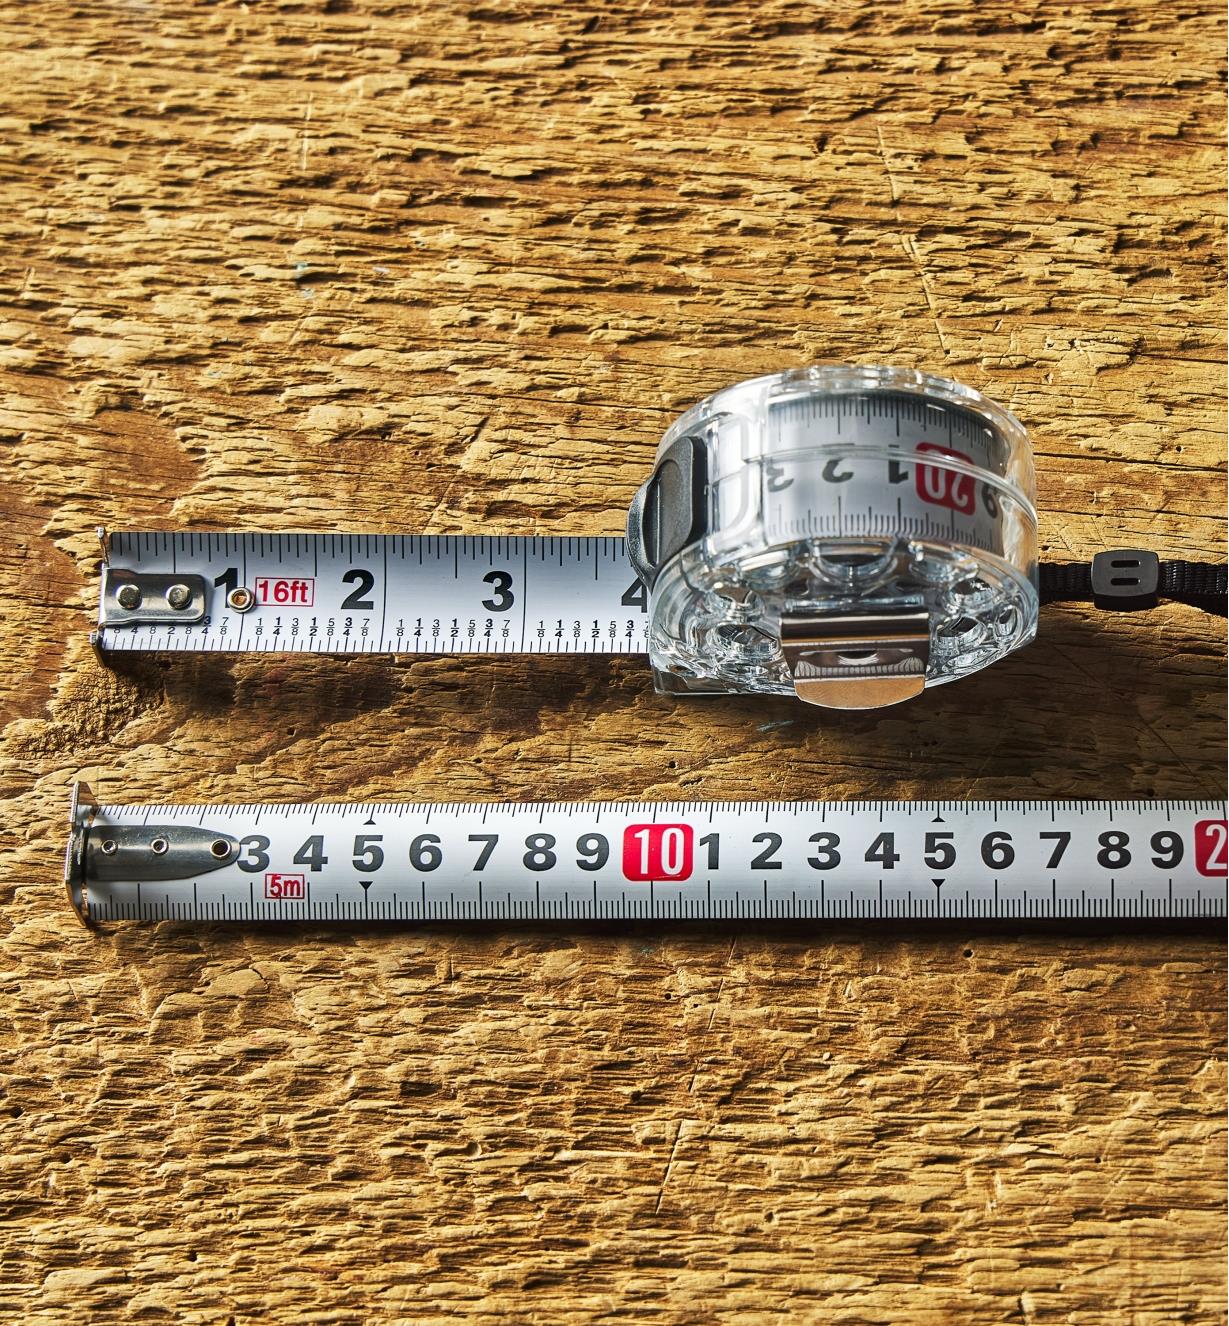 Rubans à mesurer de 10 pi pour ébéniste Lee Valley - Lee Valley Tools